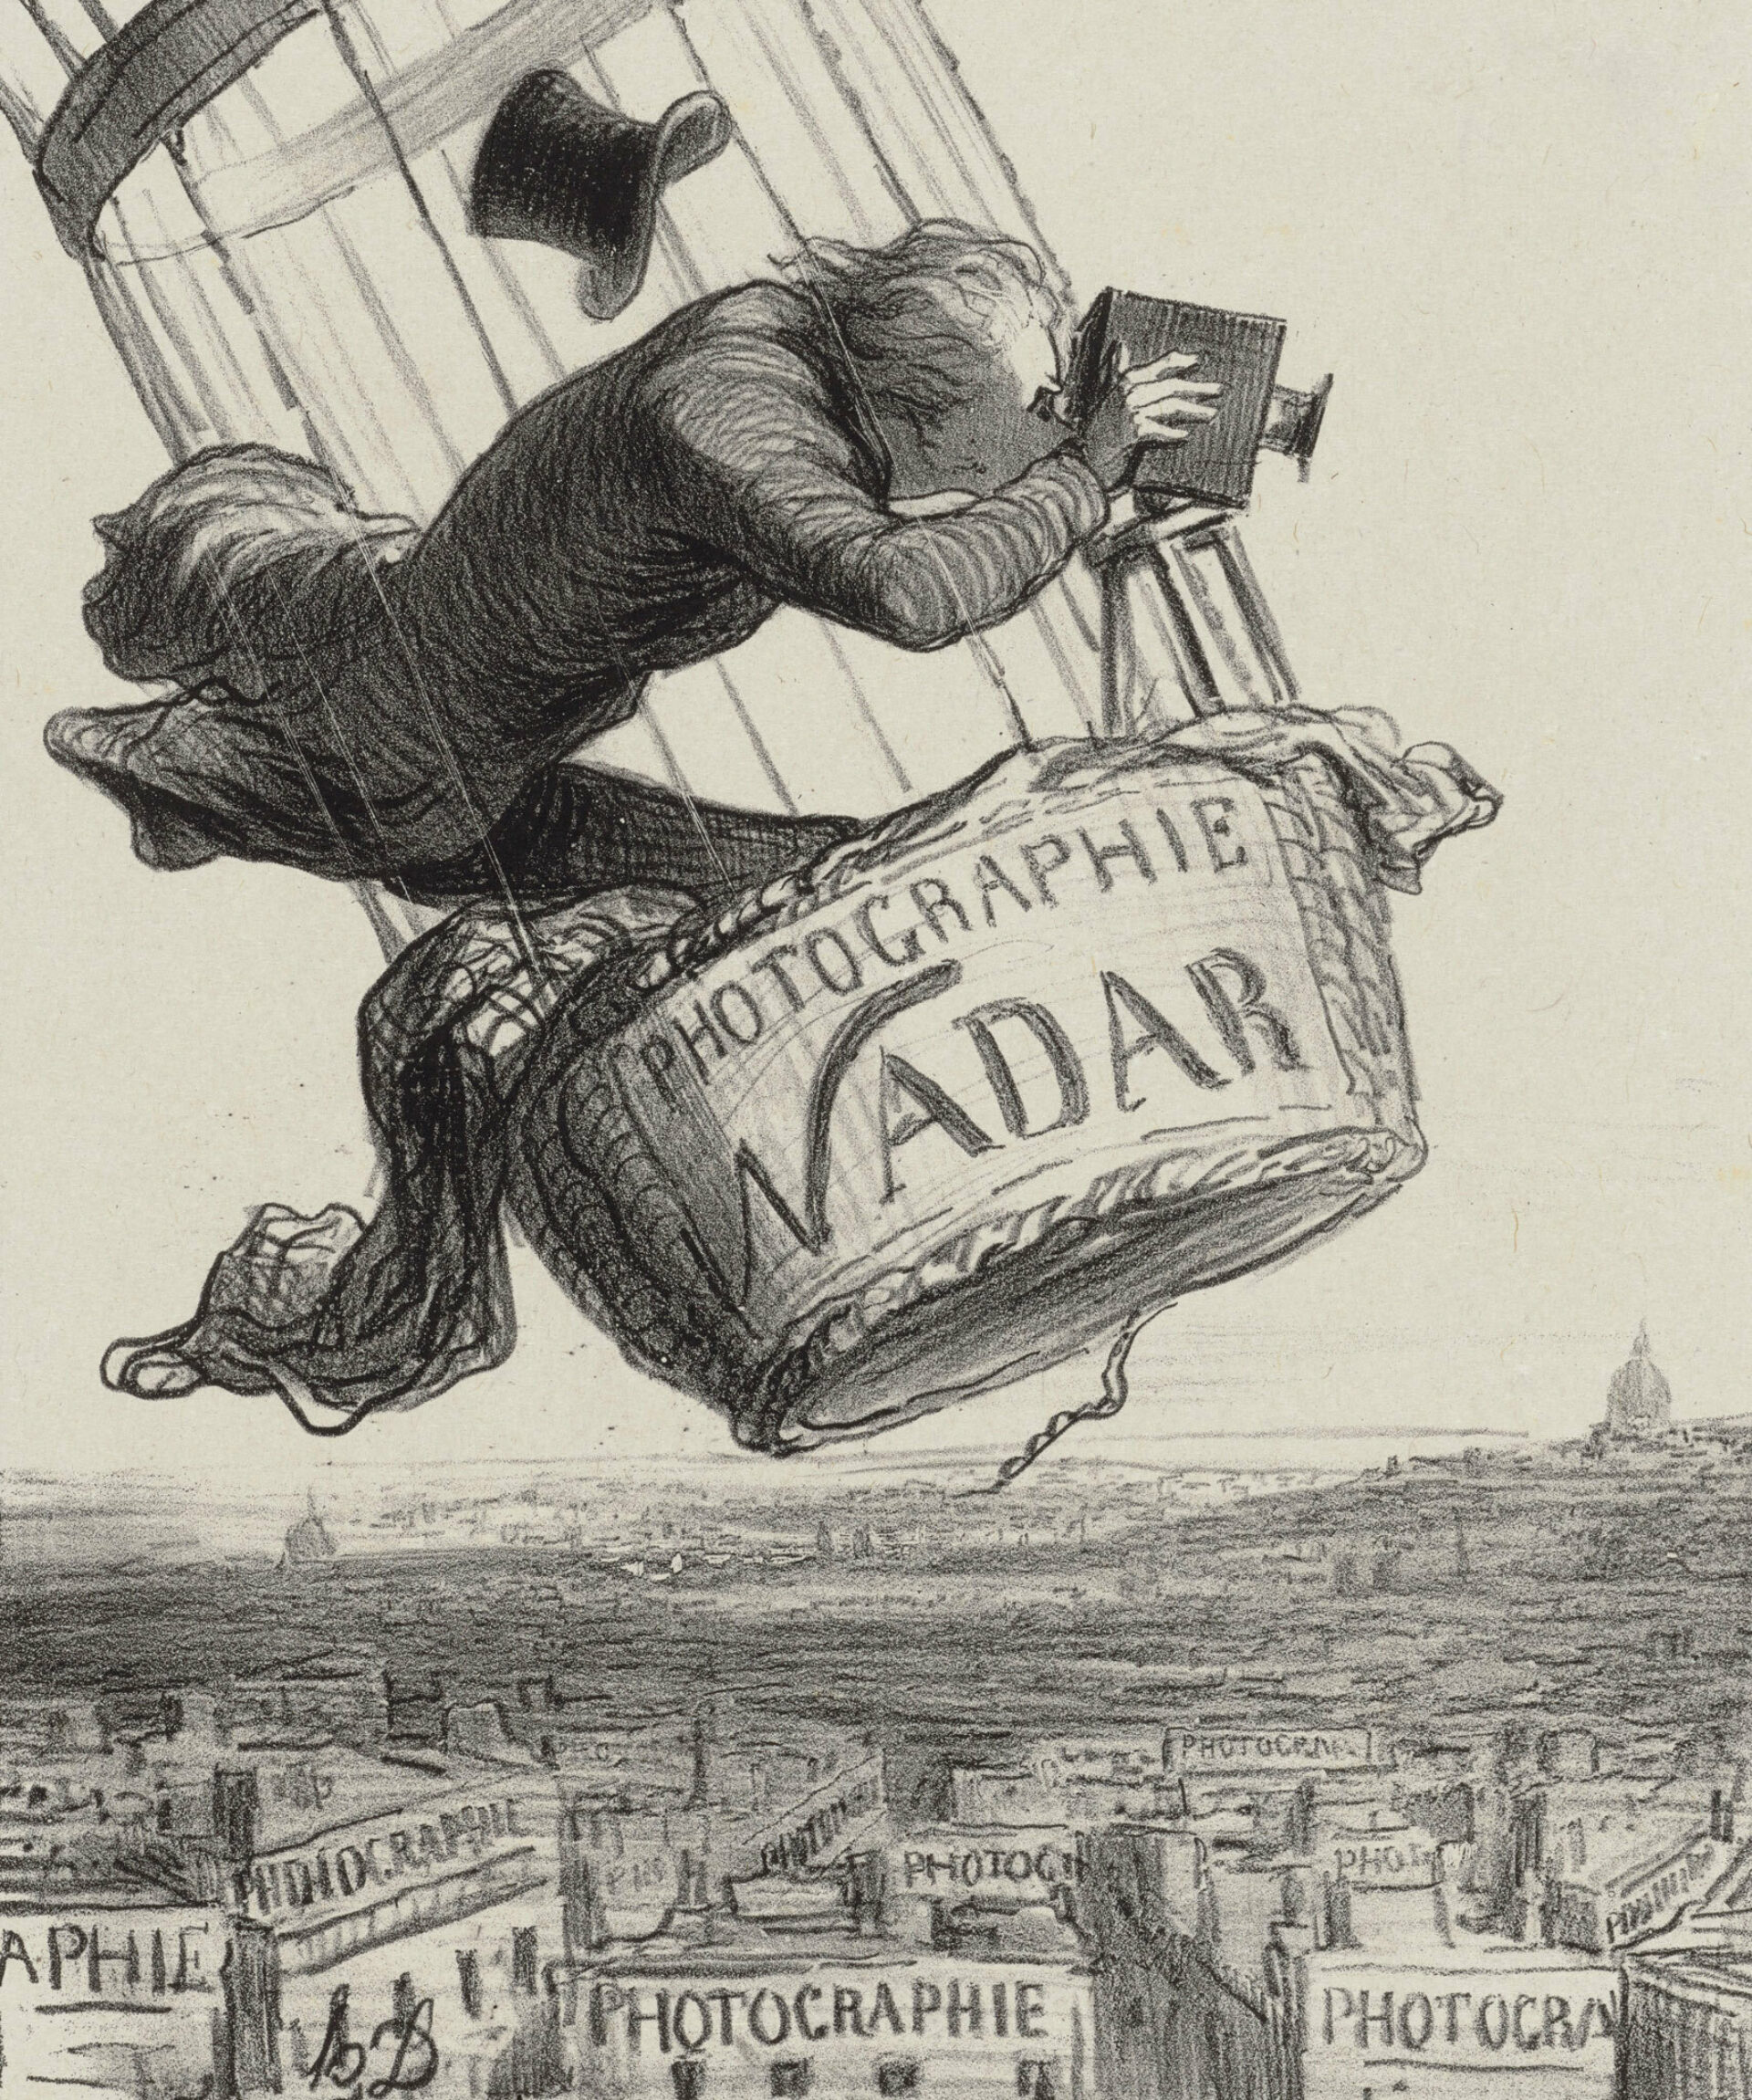 2024_Daumier_Pressebild_Nadar elevant la photographie a la hauteur de lart_1862